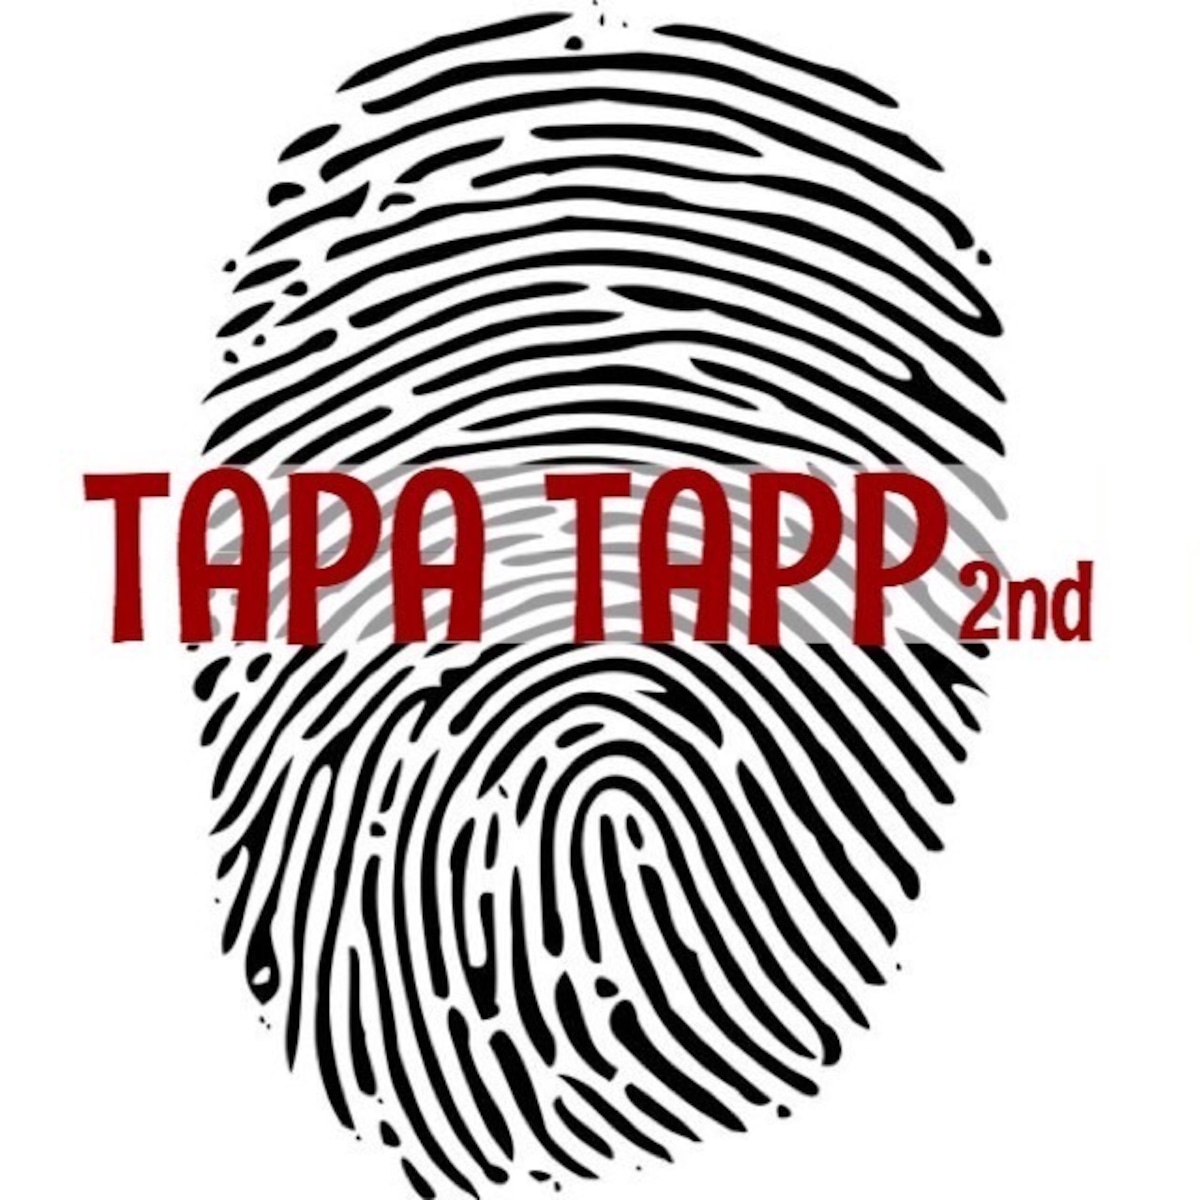 TAPATAPP 2nd